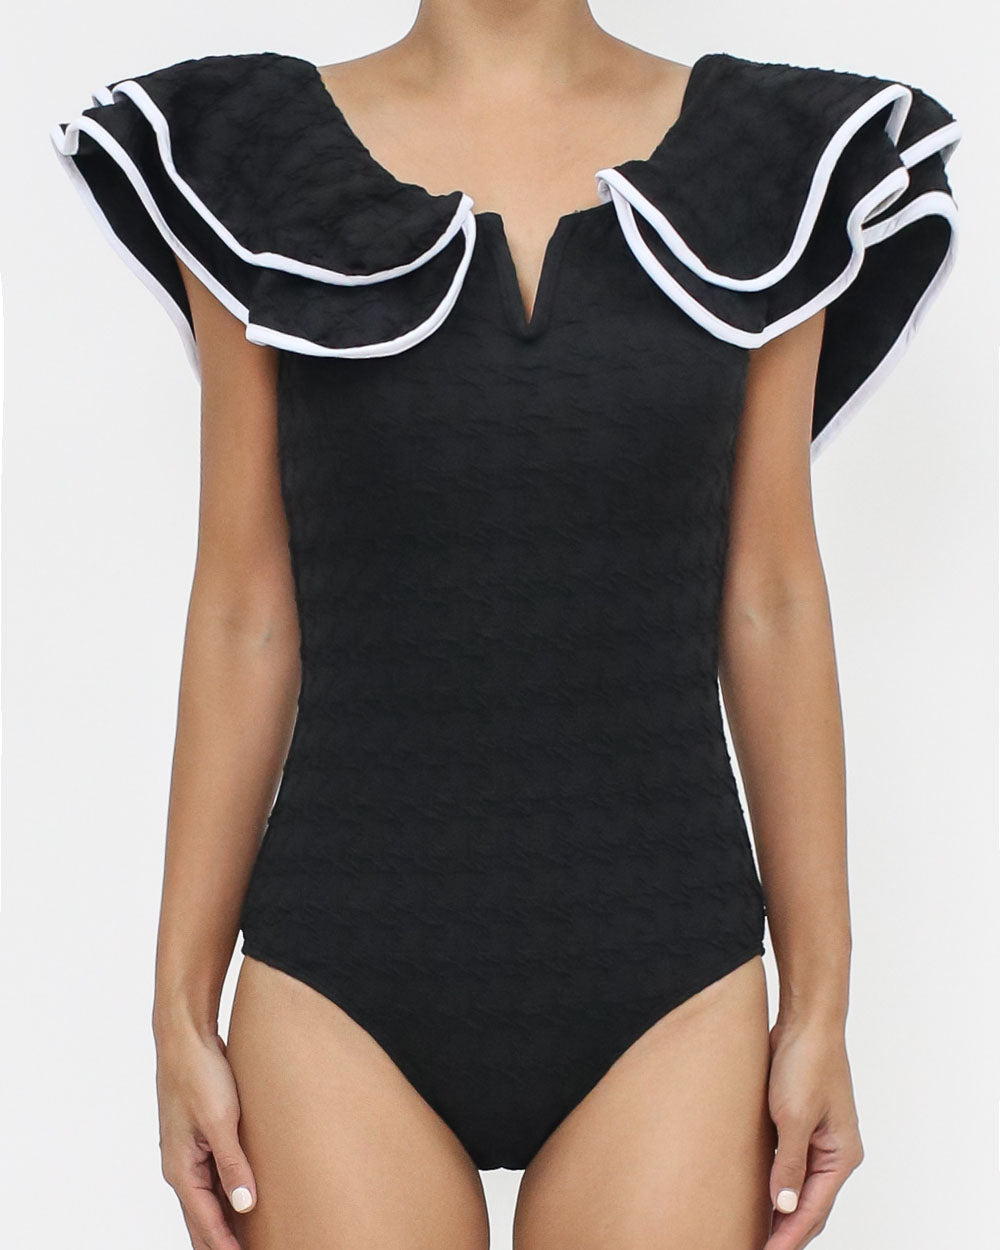 黑色和象牙色飾邊荷葉邊紋理連體泳衣 *預購*